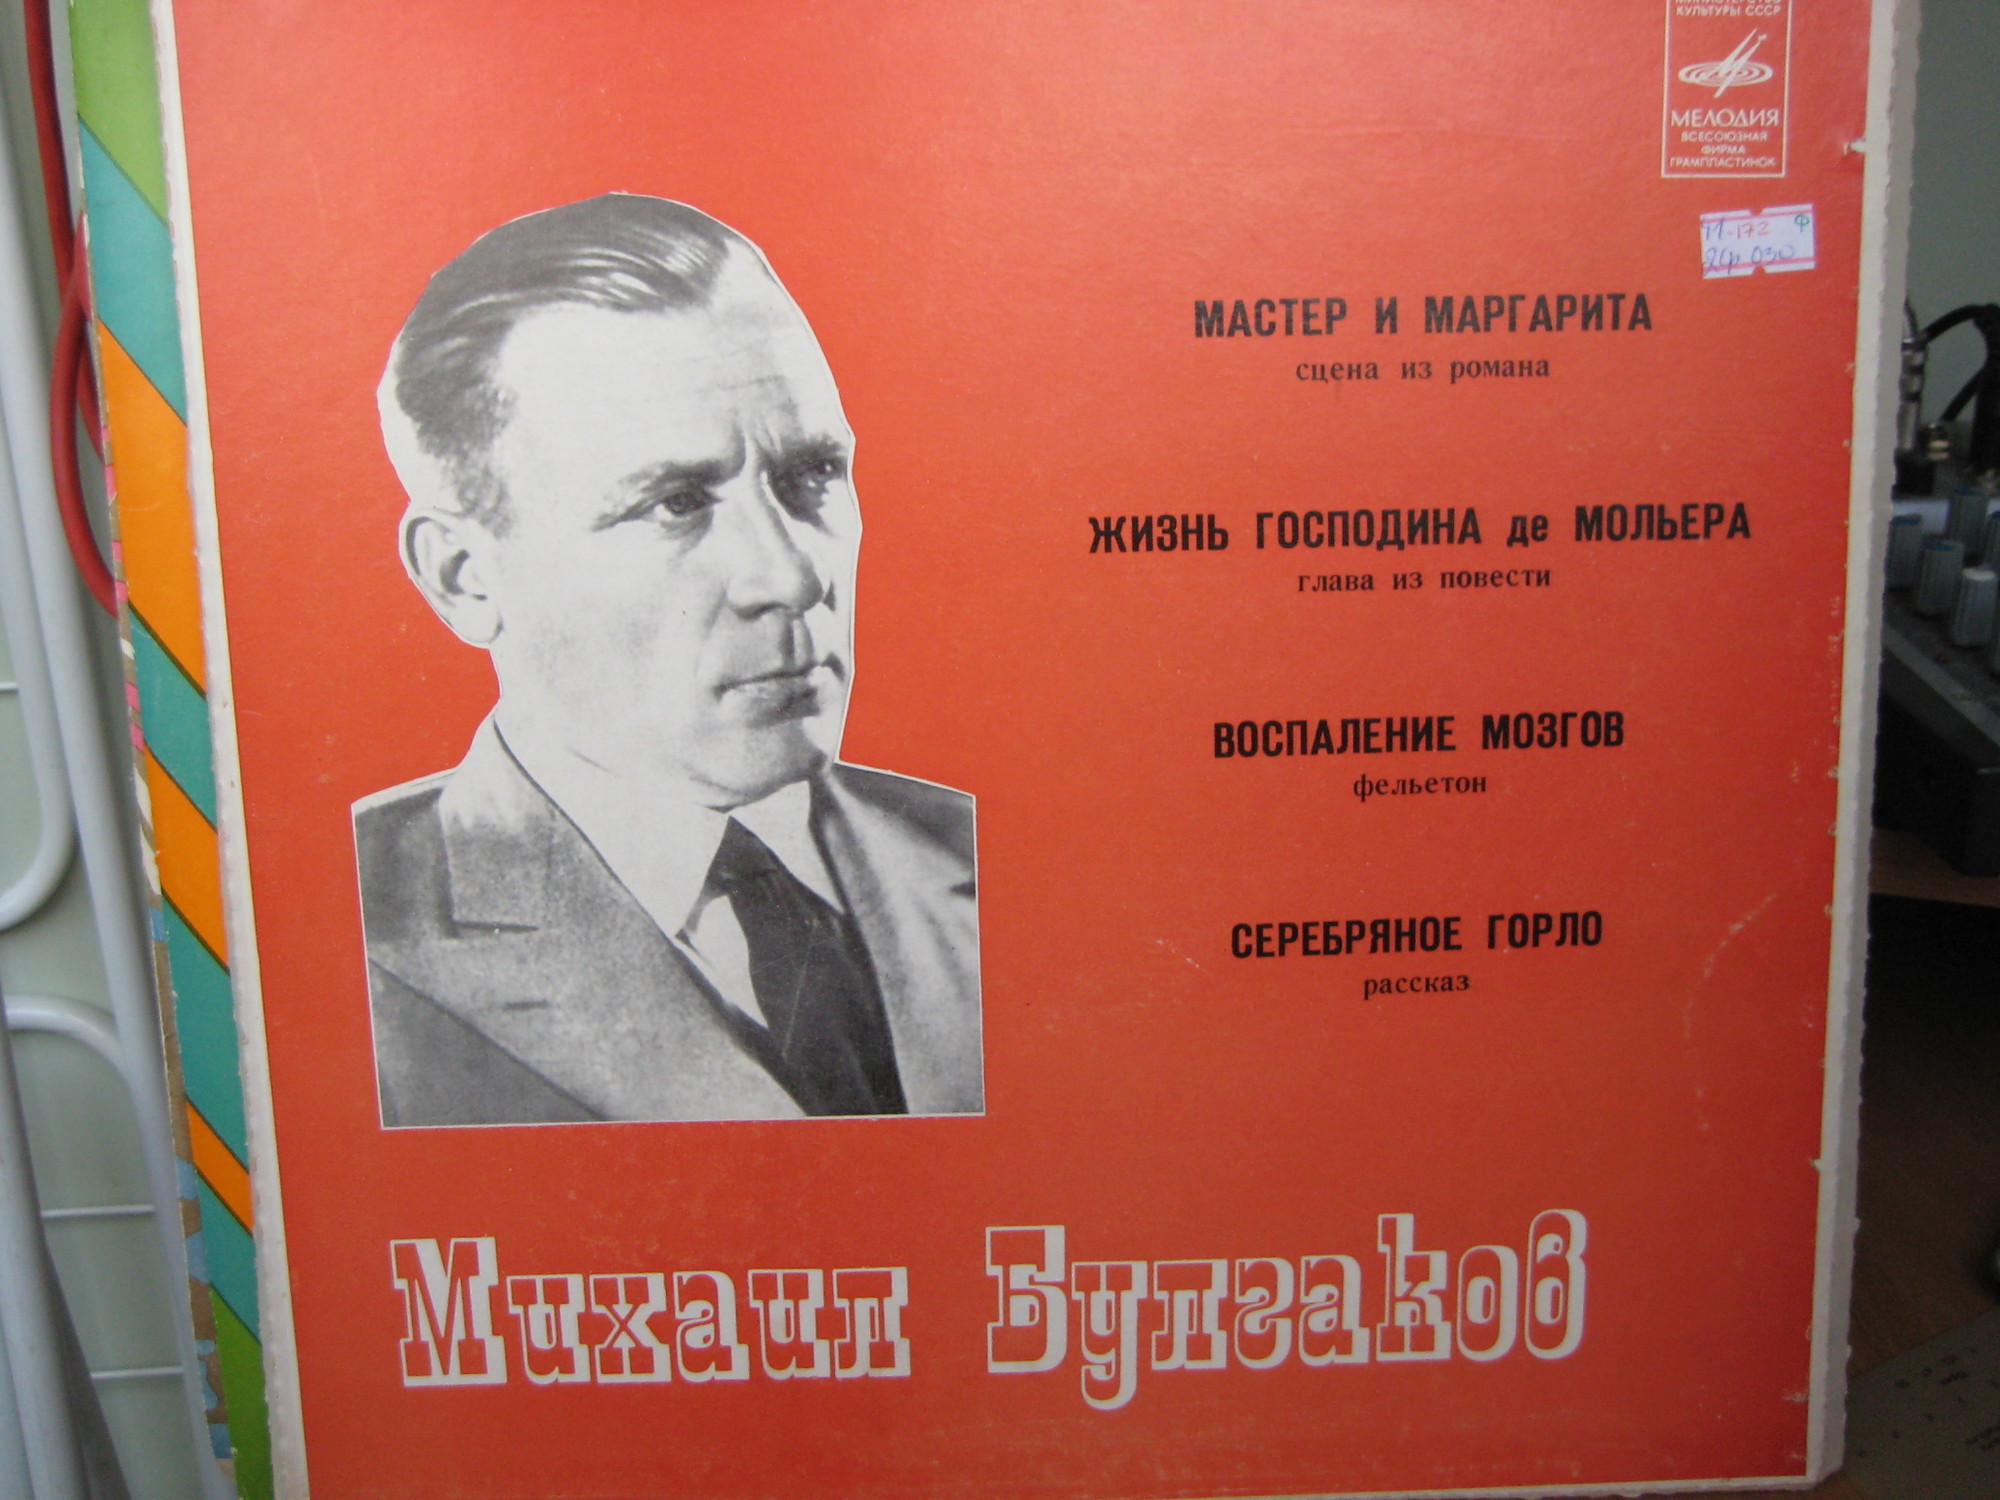 М. БУЛГАКОВ (1891 - 1940):